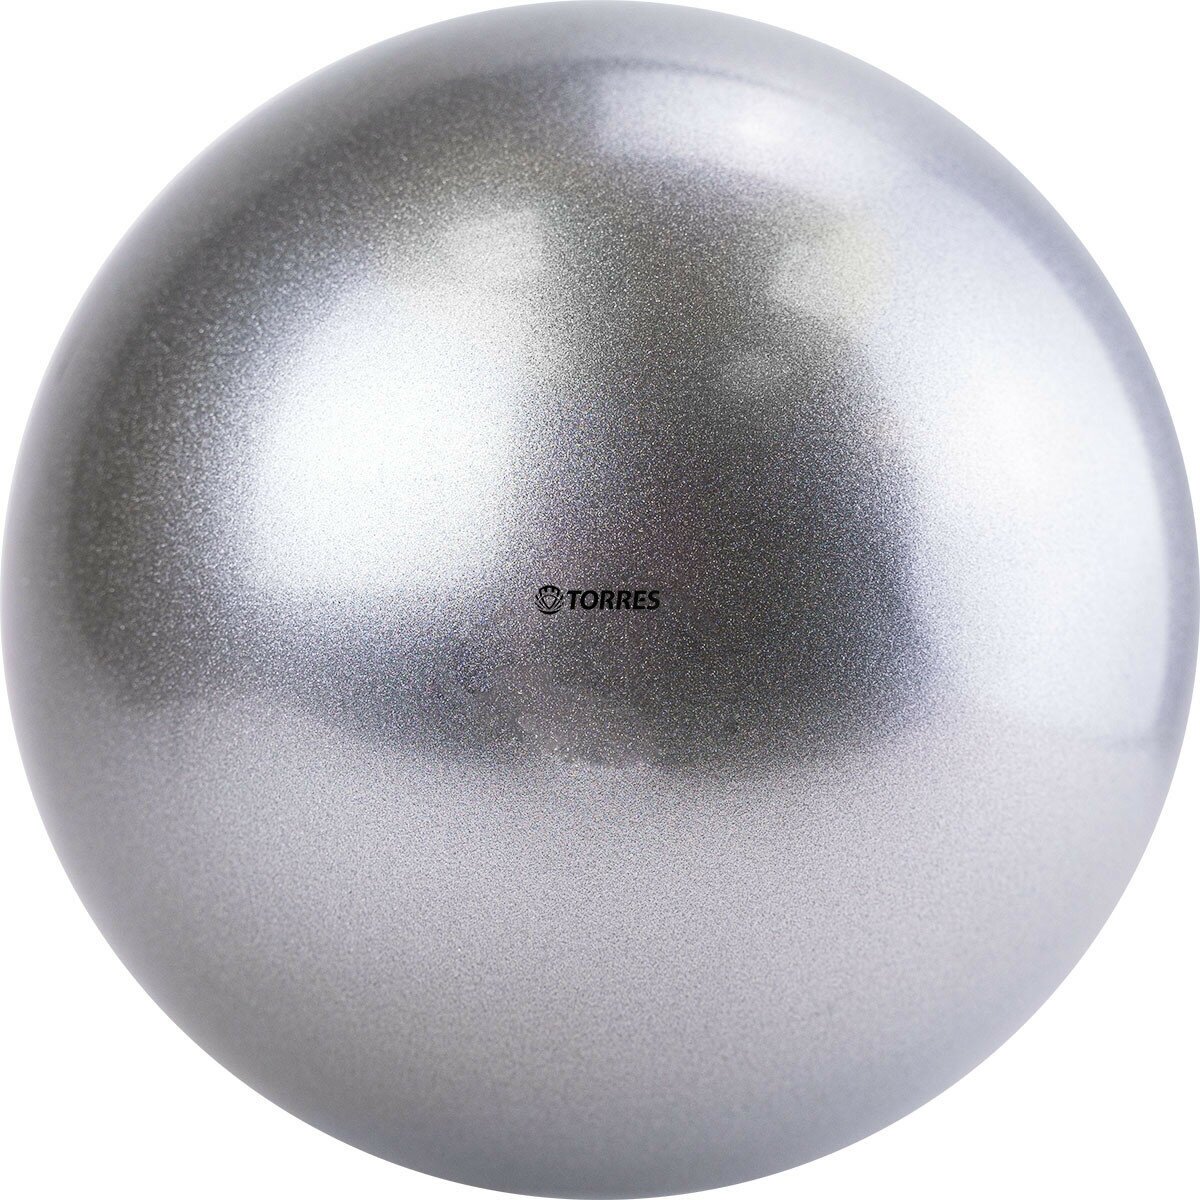 Мяч для художественной гимнастики однотонный TORRES AG-15-07, диаметр 15см, серебристый